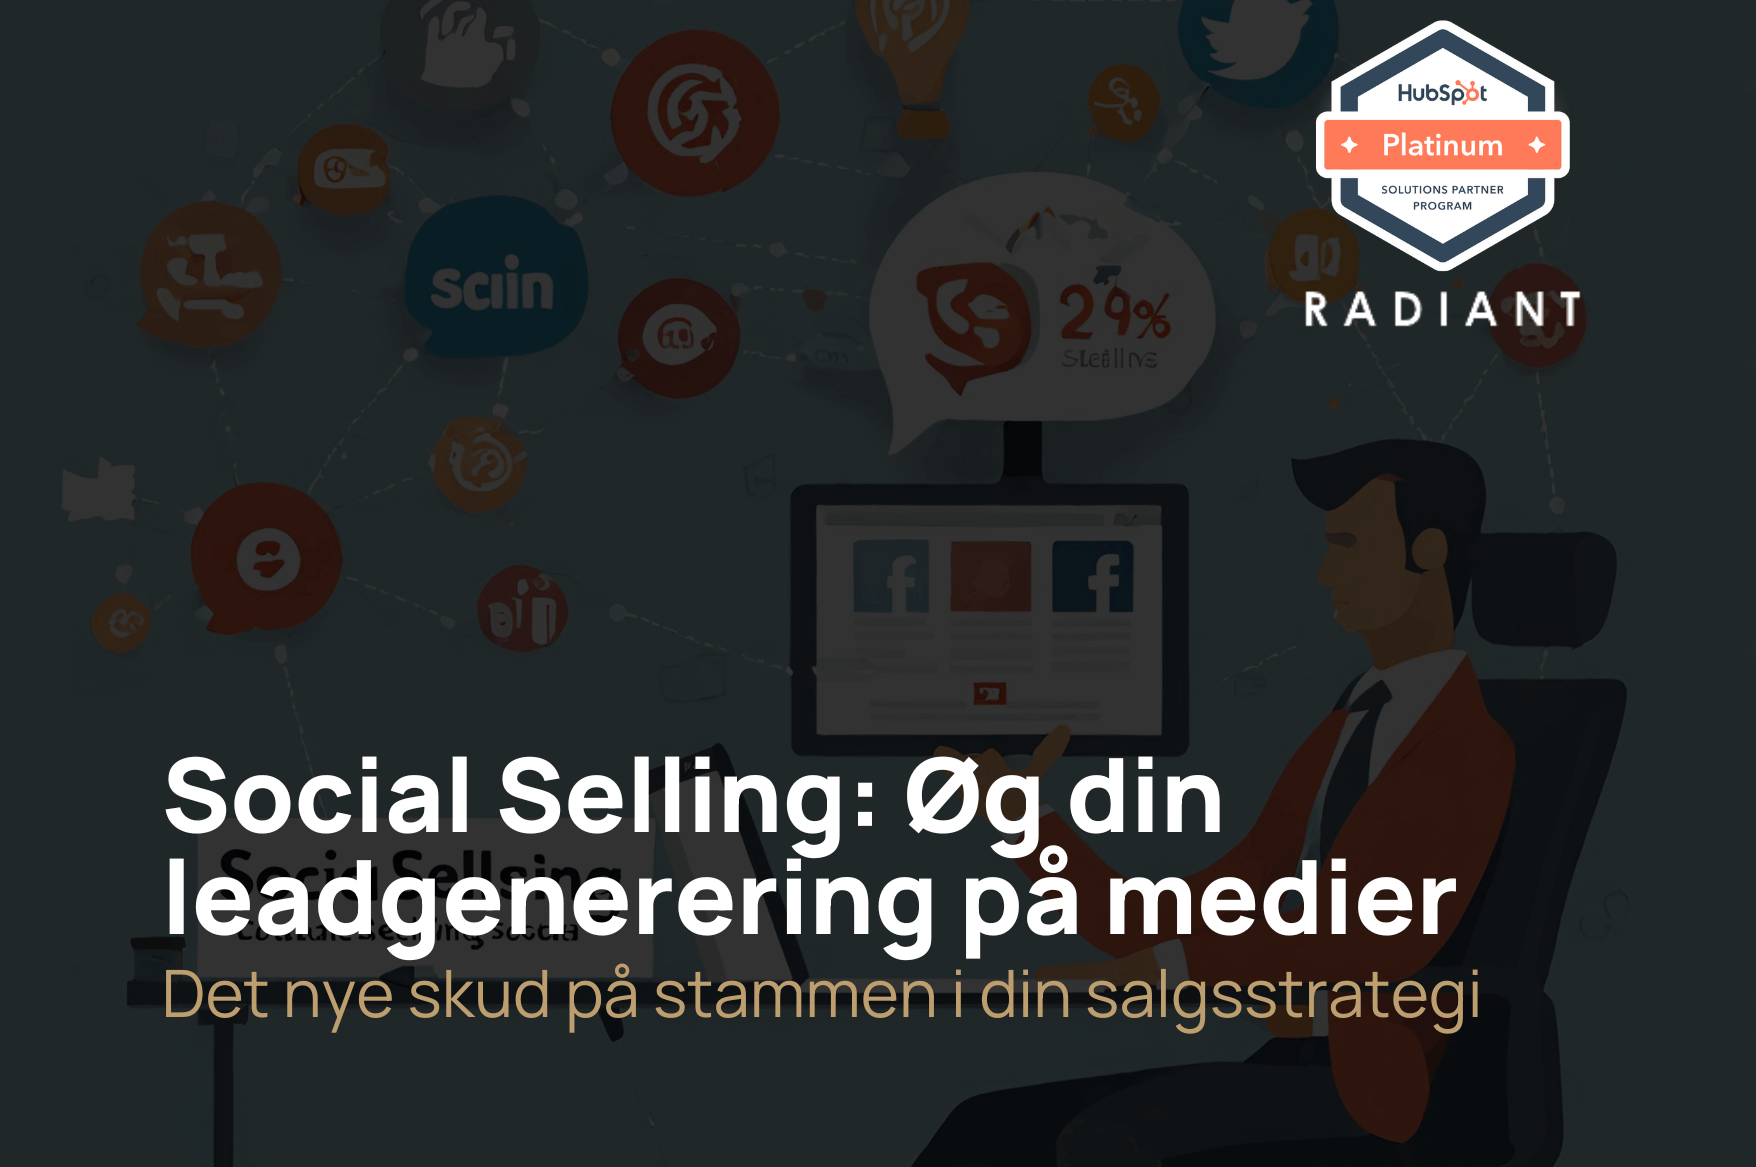 Social Selling: Øg din leadgenerering gennem effektiv online salg